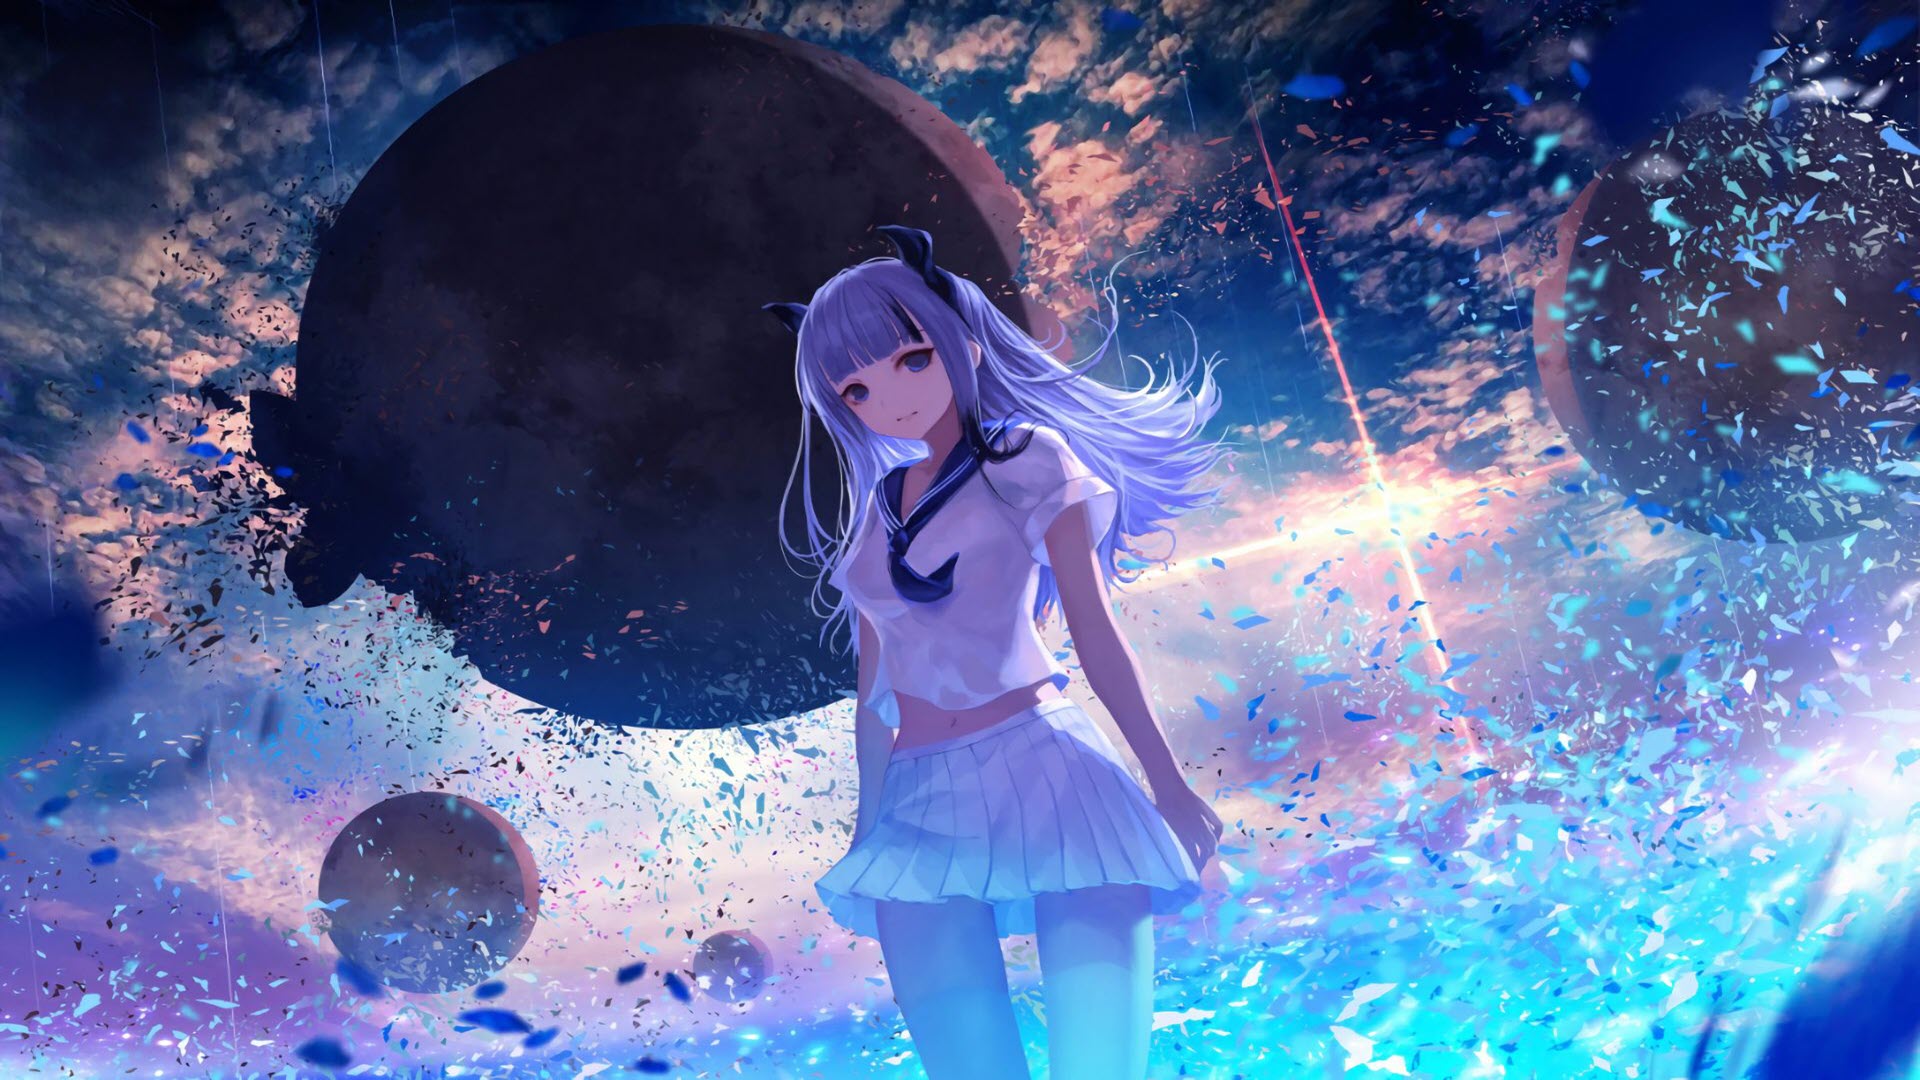 HOT Kho hình nền anime full  cho máy tính điện thoại 3K Anime Scenery HD  wallpaper  Pxfuel